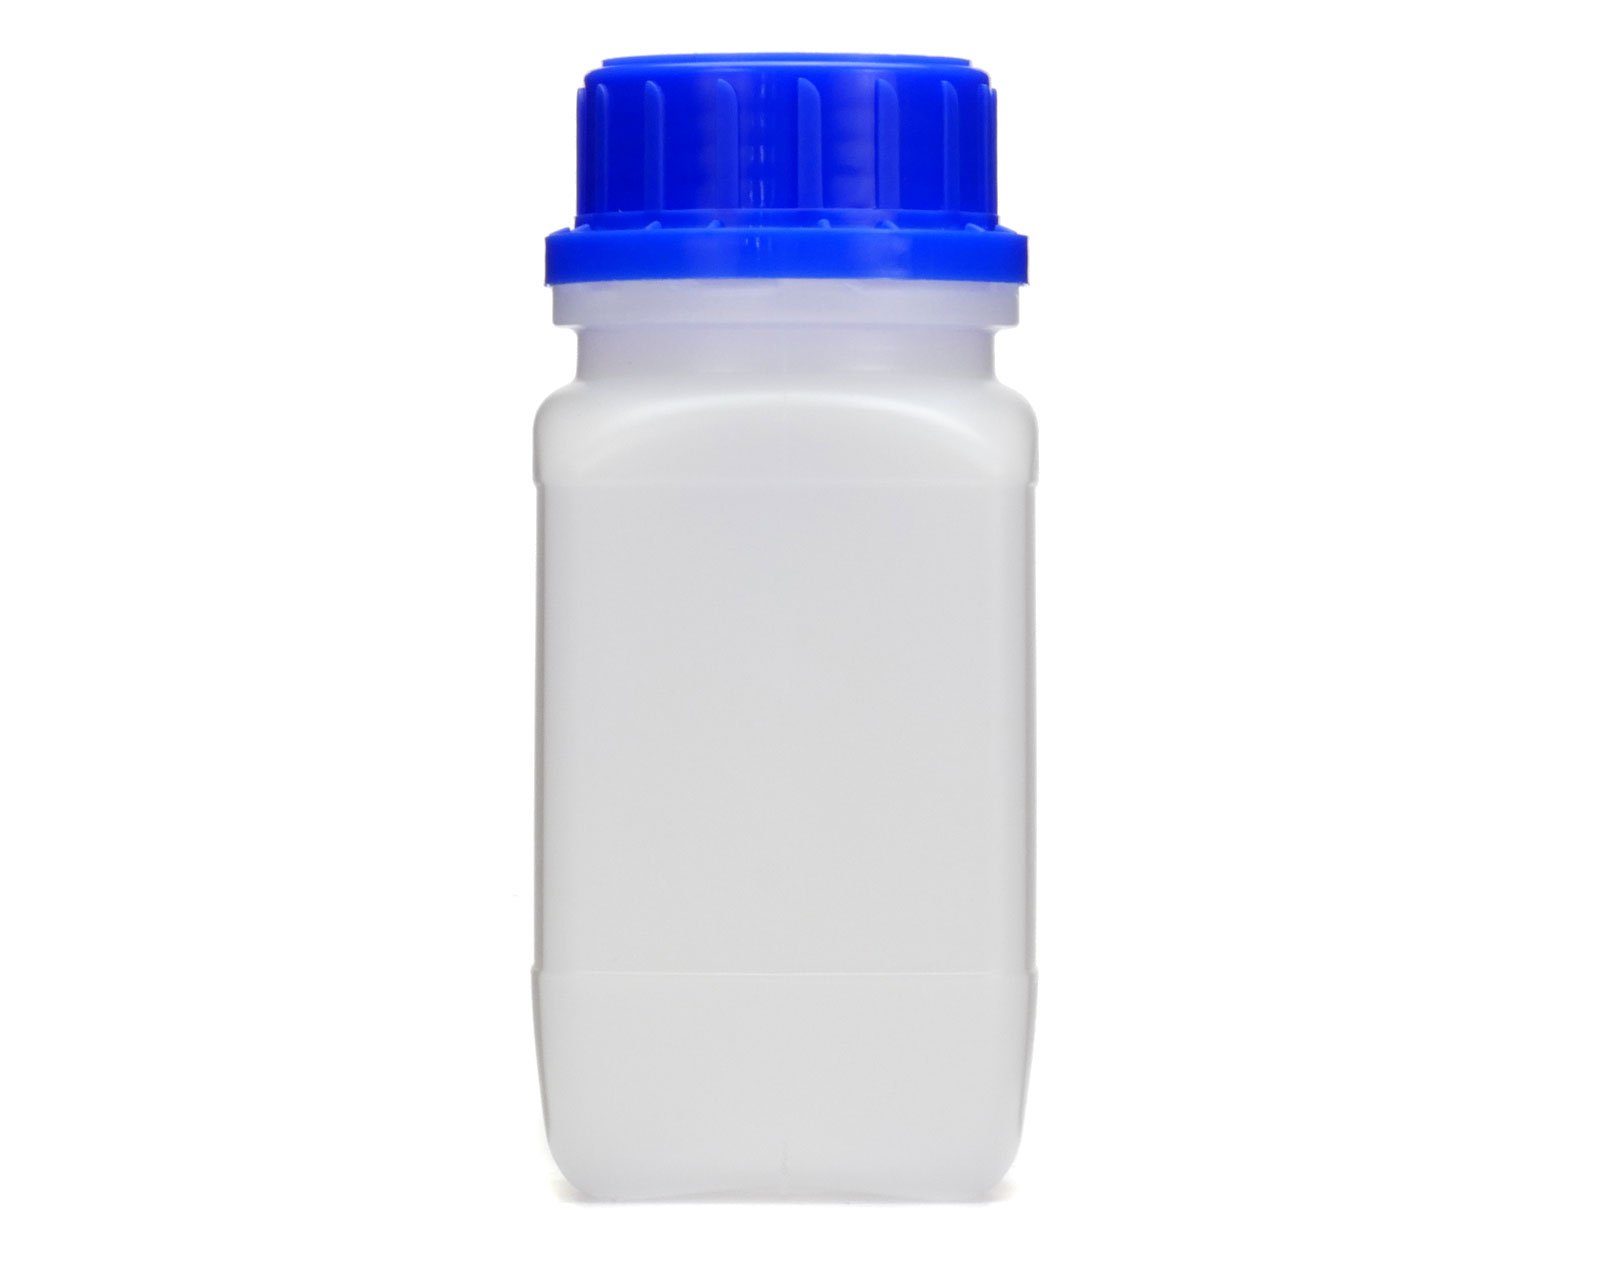 OCTOPUS Kanister 250 ml Deckel, 45 vierkant, mit blauem St) Weithals-Flasche G naturfarben, (250